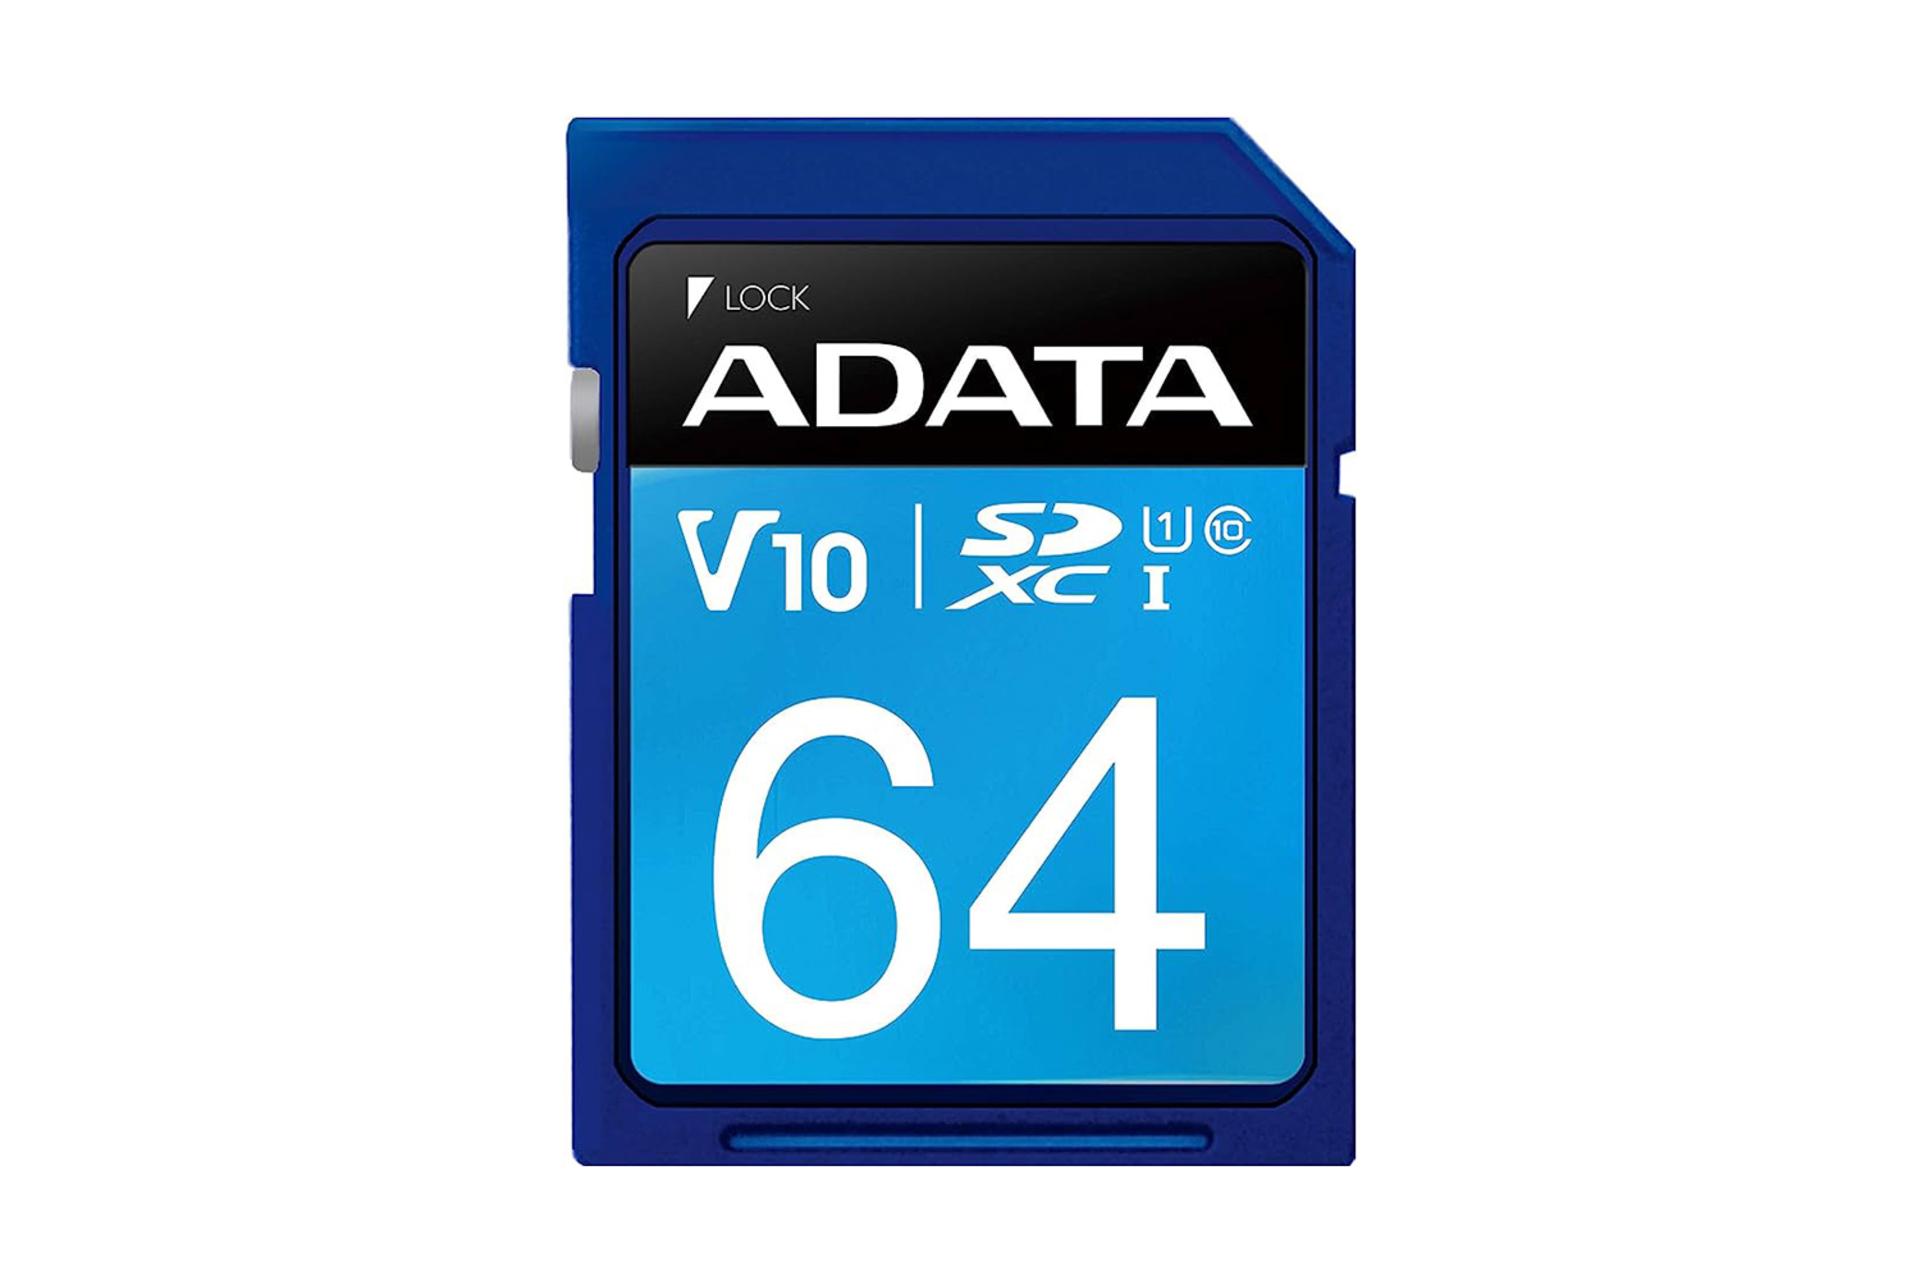 مرجع متخصصين ايران كارت حافظه اي ديتا ADATA Premier V10 SDXC Class 10 UHS-I U1 64GBكارت حافظه اي ديتا ADATA Premier V10 SDXC Class 10 UHS-I U1 64GB